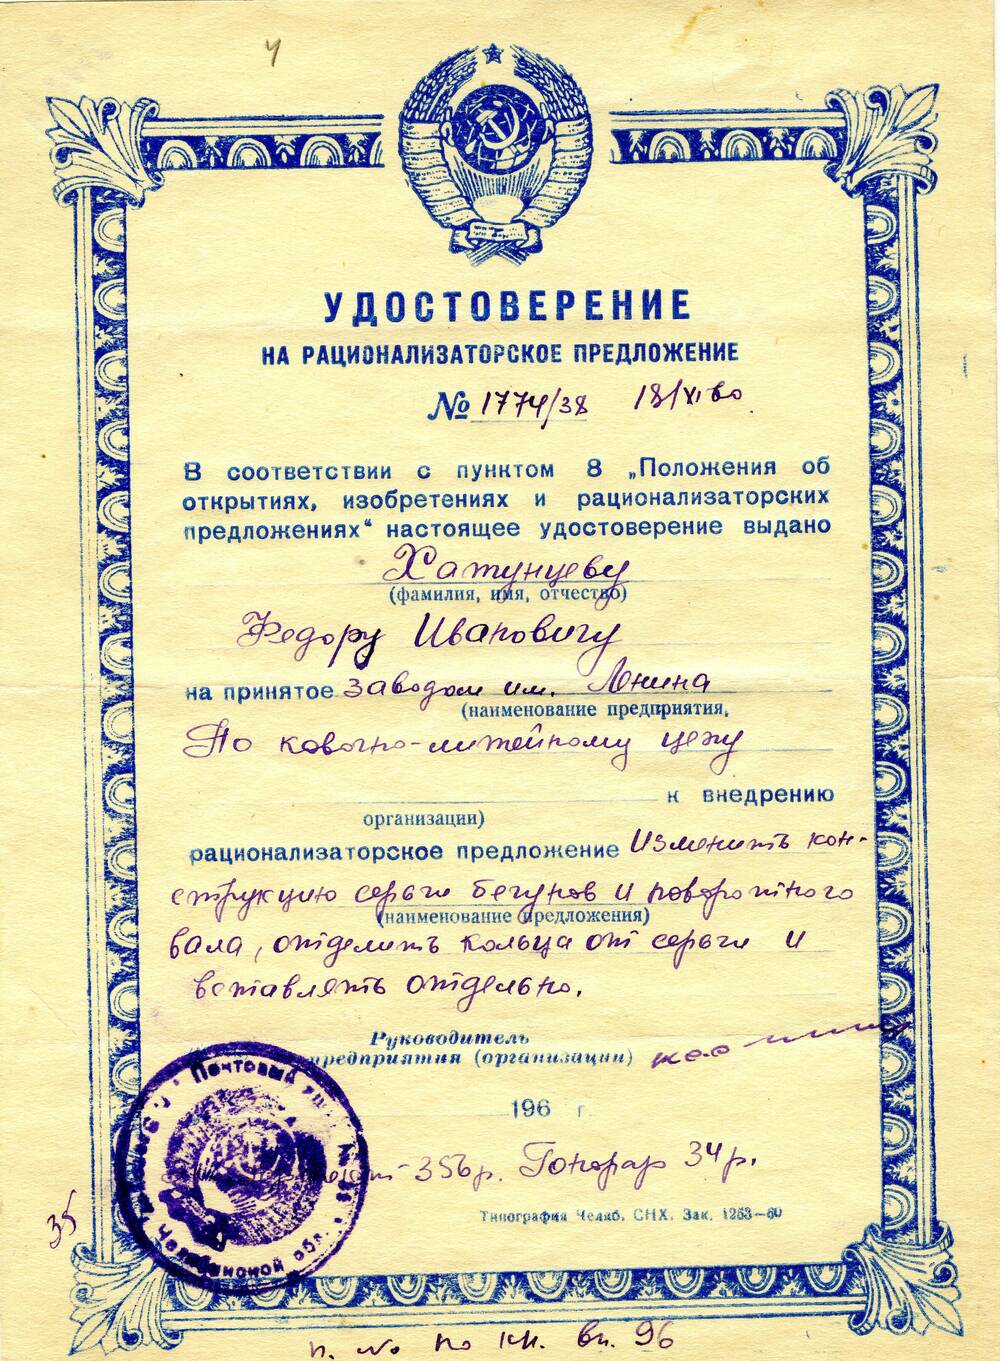 Удостоверение на рационализаторское предложение №1774/38 Хатунцева Федора Ивановича. 1960 г.